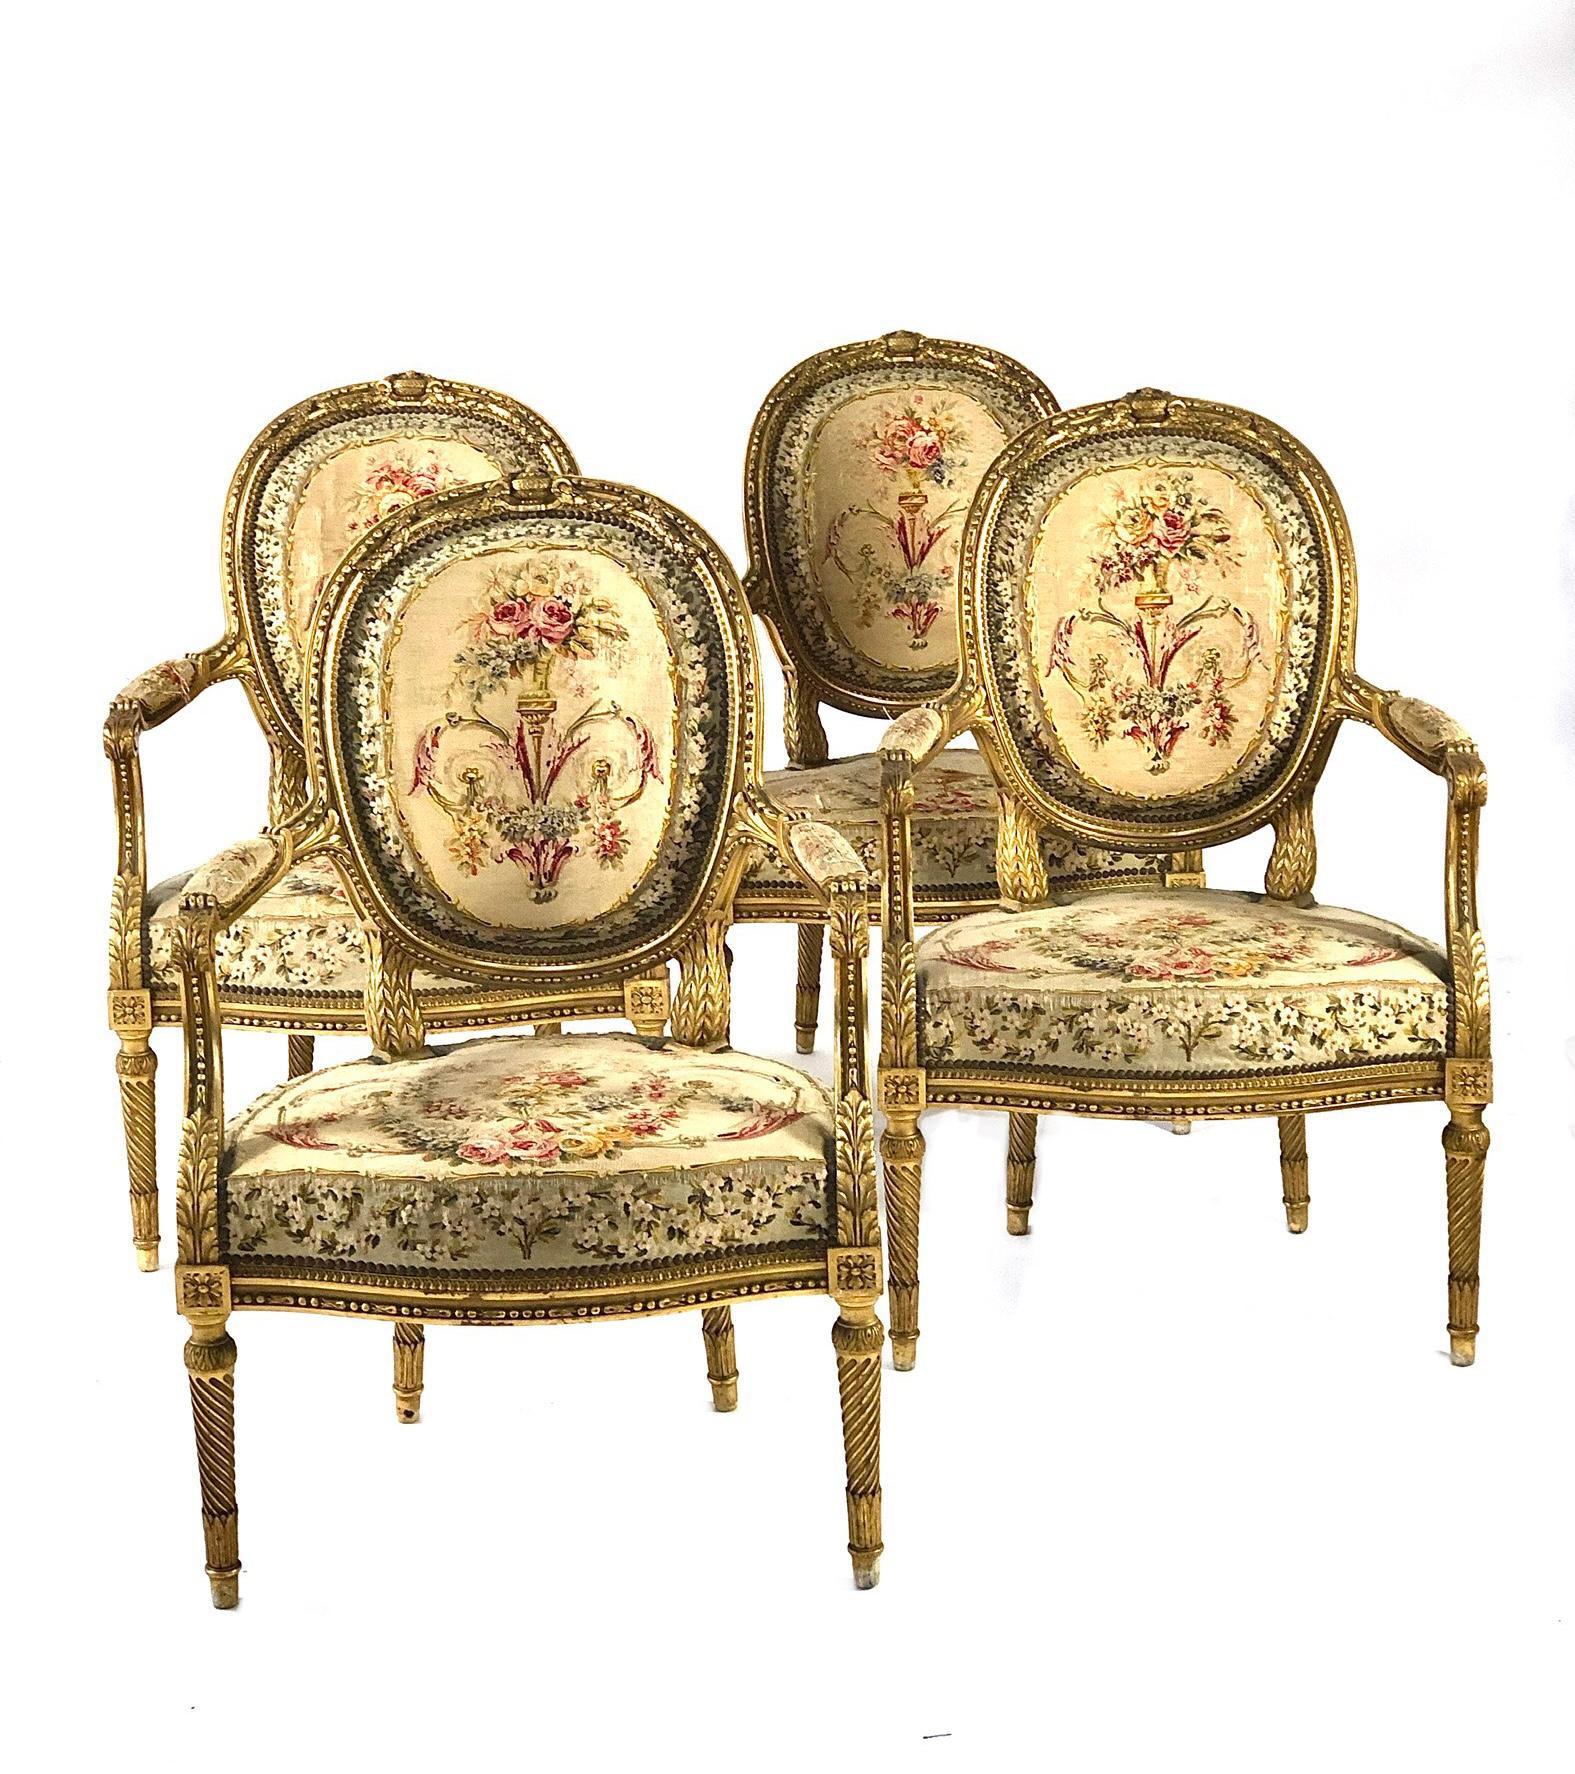 Eine exquisite Wohnzimmergarnitur aus vergoldetem Holz im Louis-XVI-Stil, bestehend aus einem Zweisitzer-Sofa und vier passenden Sesseln. Elegant geschnitzt und gepolstert, zeigt diese feine Garnitur reich geschnitzte Motive sowie attraktiv